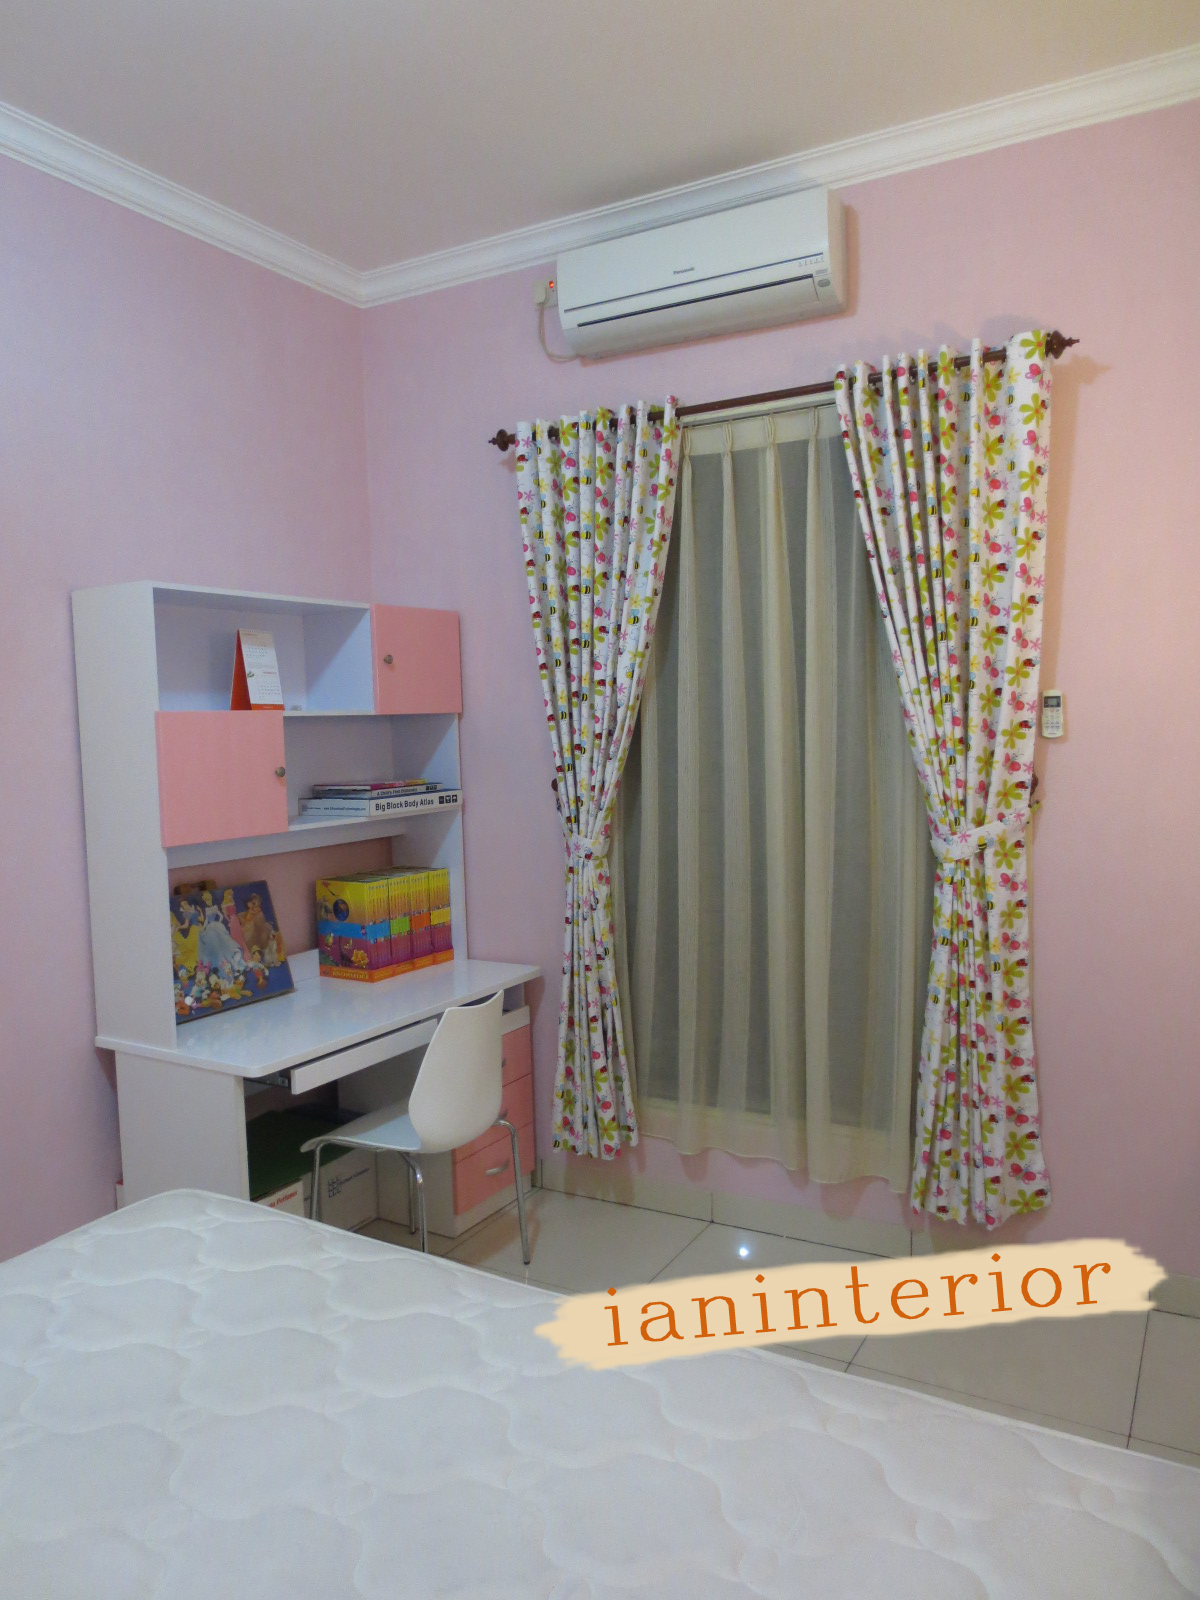 ianinterior: Wallpaper Pink untuk Kamar Anak Perempuan di